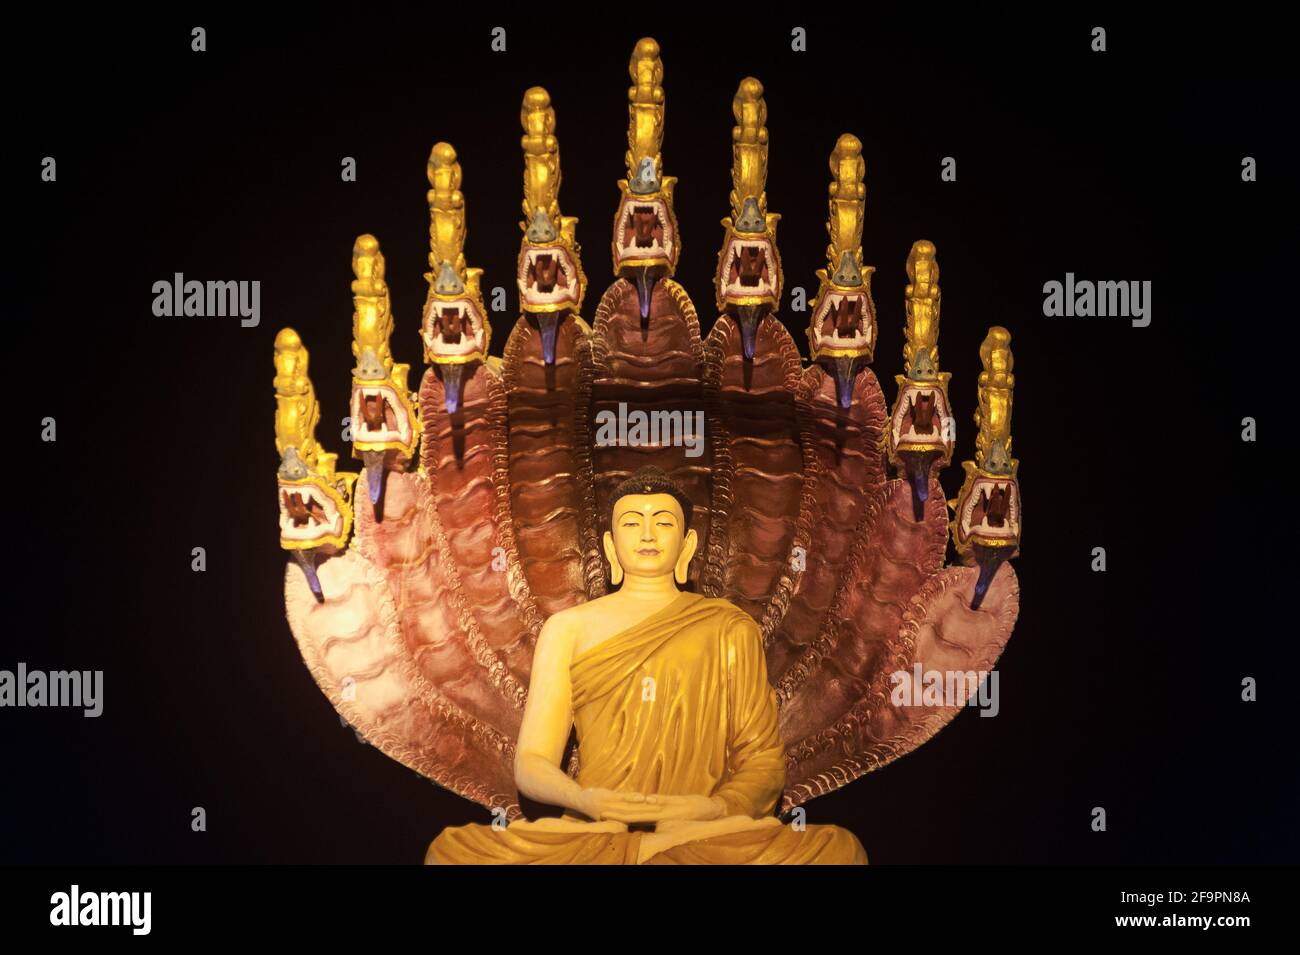 30.01.2017, Mawlamyine, Mon State, Myanmar - eine beleuchtete Buddha-Figur in der Kyaikthanlan-Pagode, der höchsten buddhistischen Pagode der Stadt. 0SL170130D048KR Stockfoto